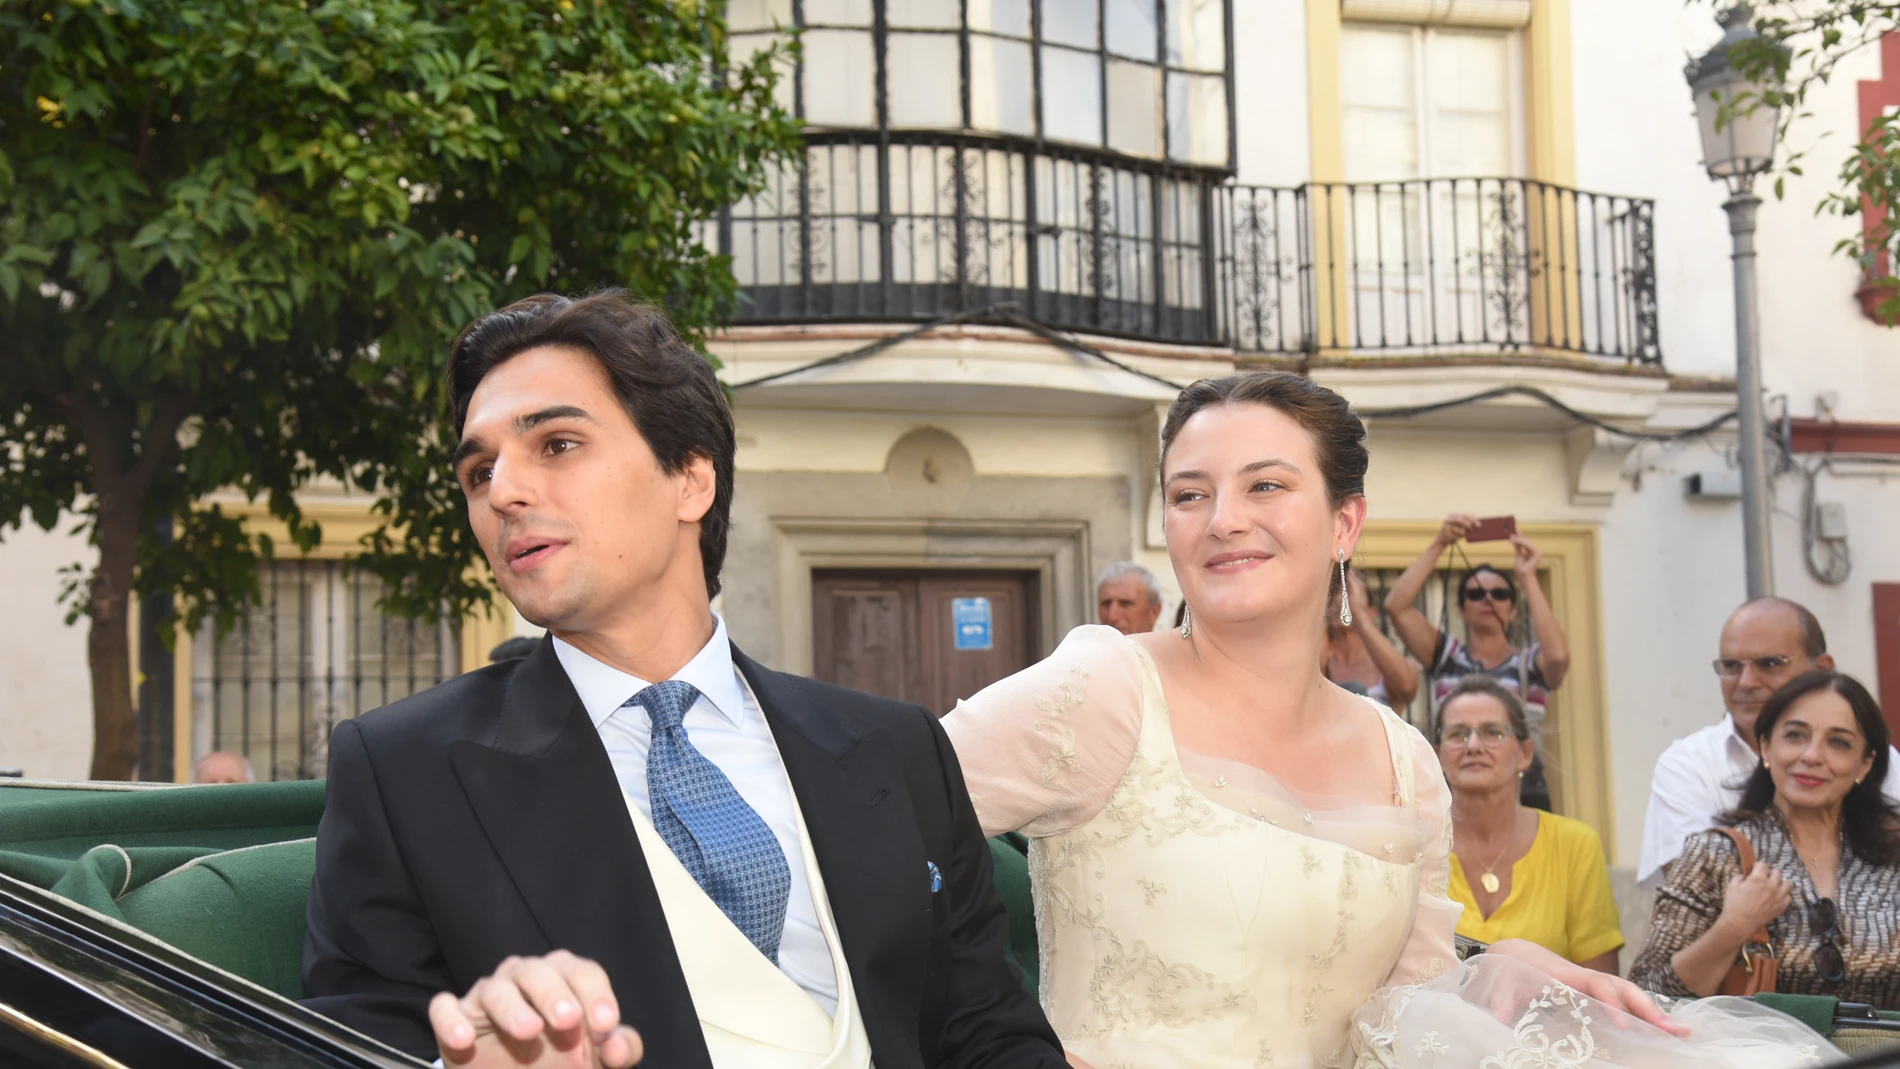 La boda de Victoria de Hohenlohe reúne a la alta sociedad española